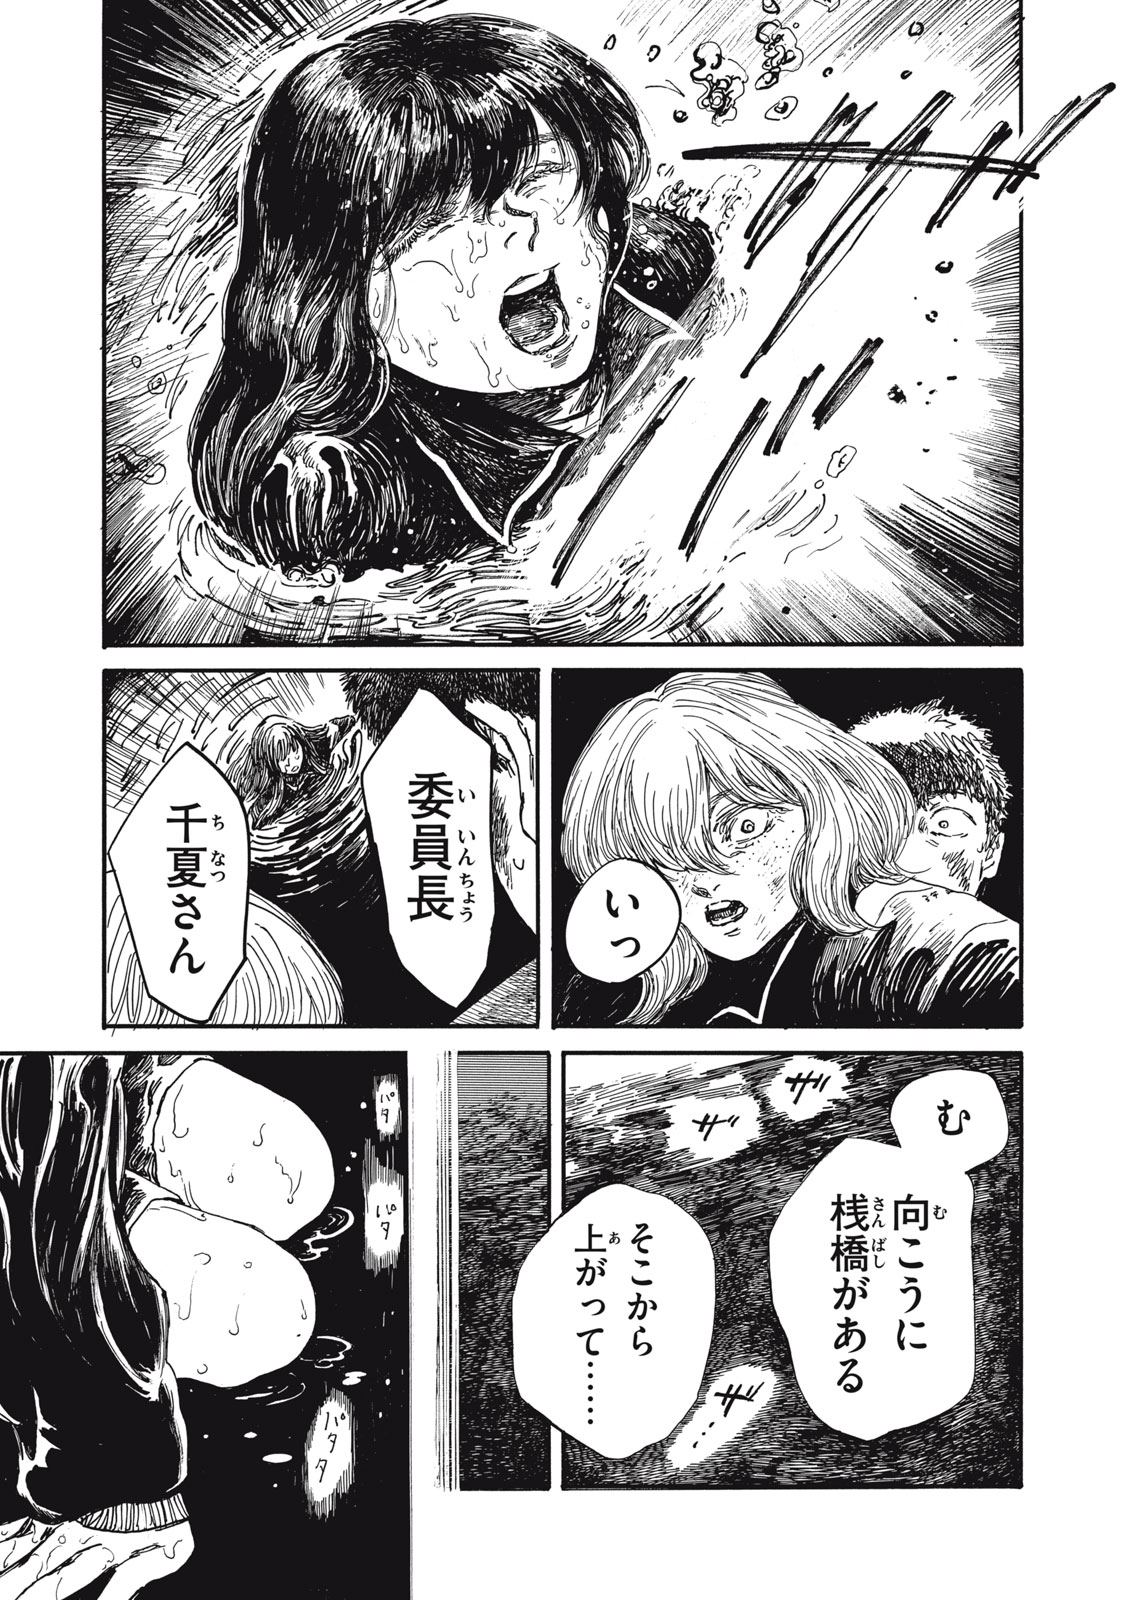 Watashi no Hara no Naka no Bakemono - Chapter 29 - Page 9